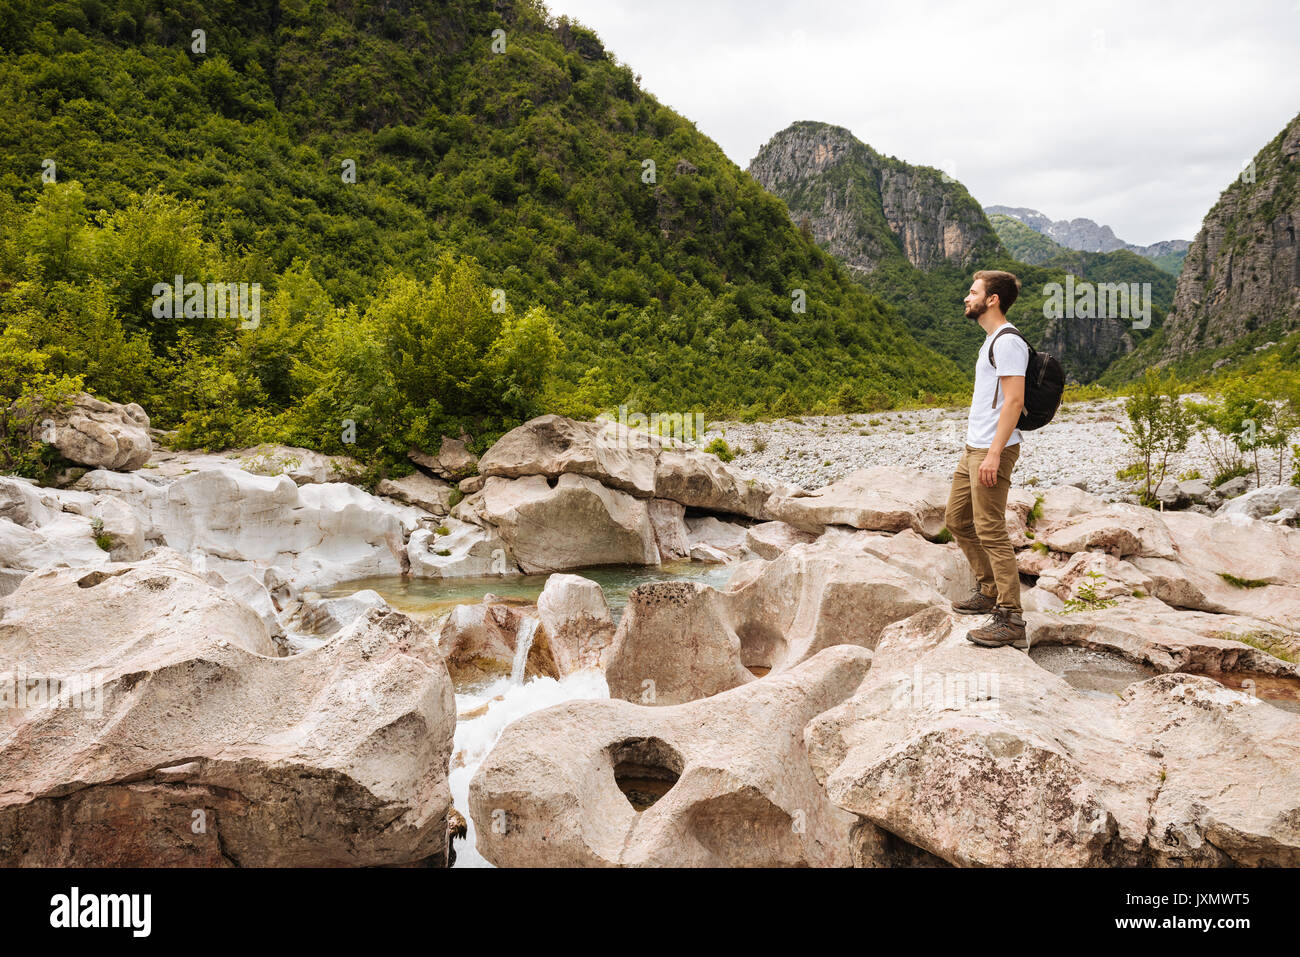 Homme debout sur des rochers à l'écart, maudit les montagnes, Theth, Shkodër, Albanie, Europe Banque D'Images